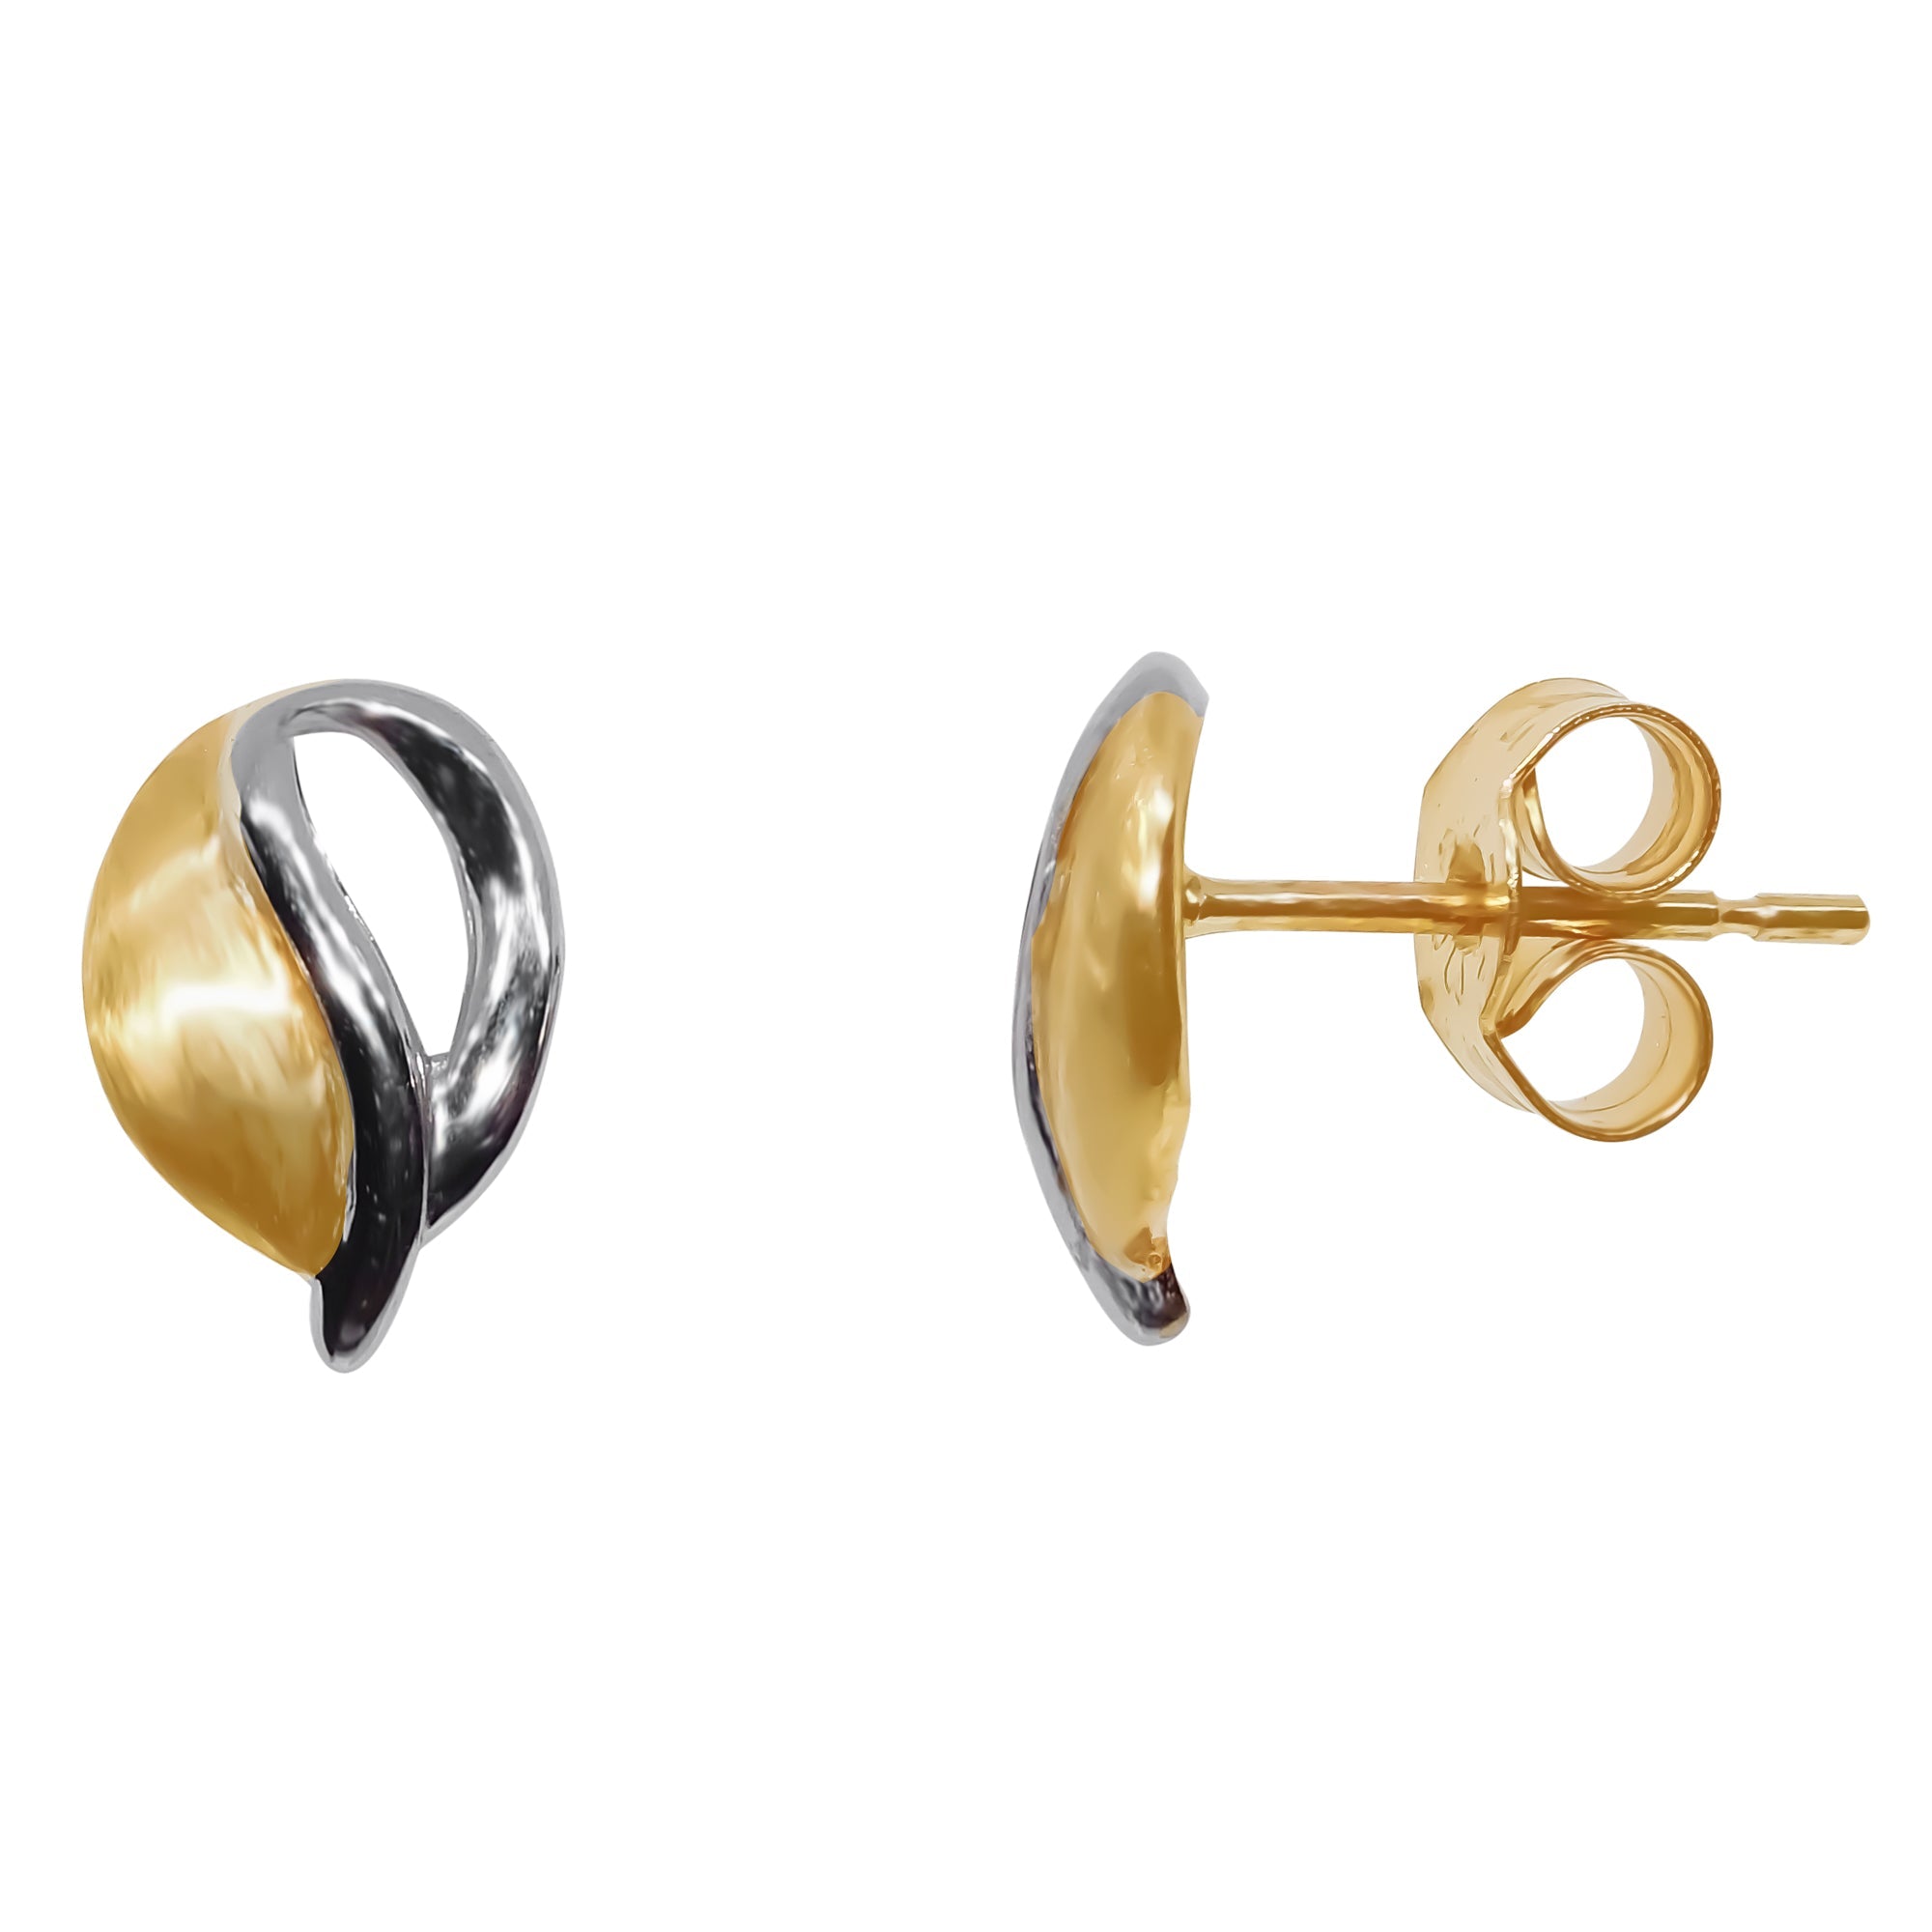 9ct yellow & white gold loop stud earrings